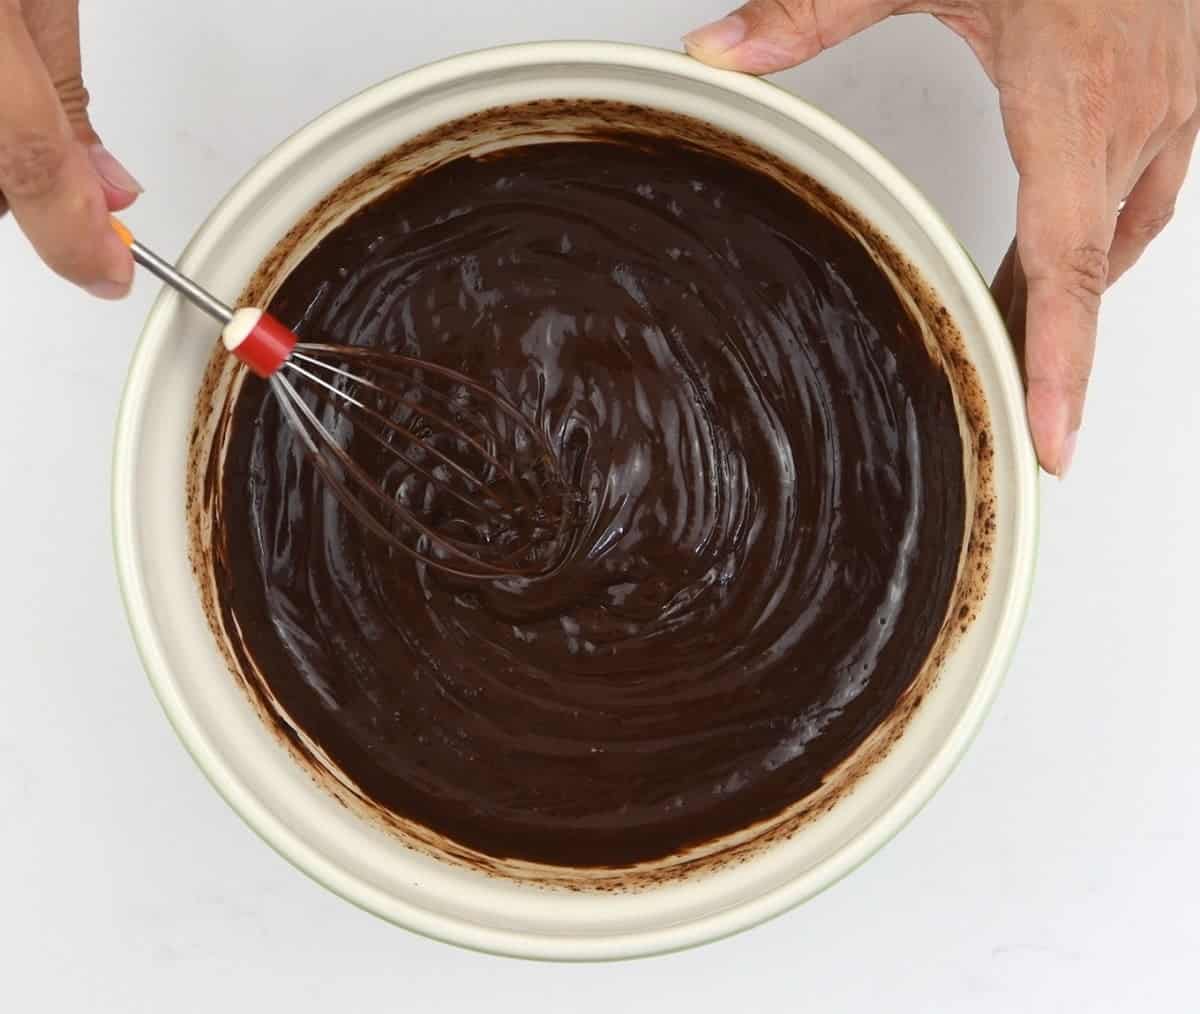 Making vegan chocolate ganache